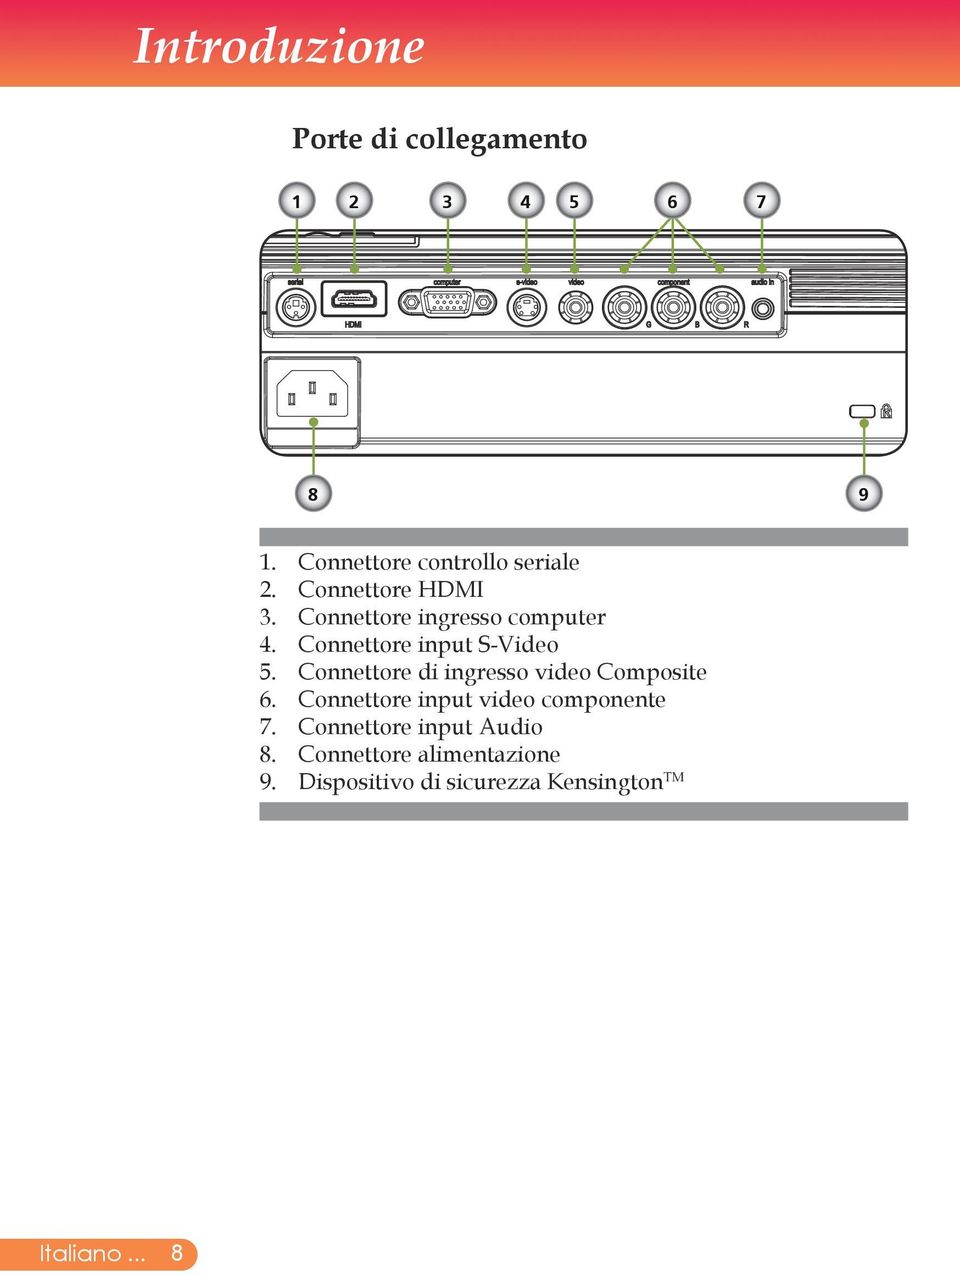 Connettore di ingresso video Composite 6. Connettore input video componente 7.